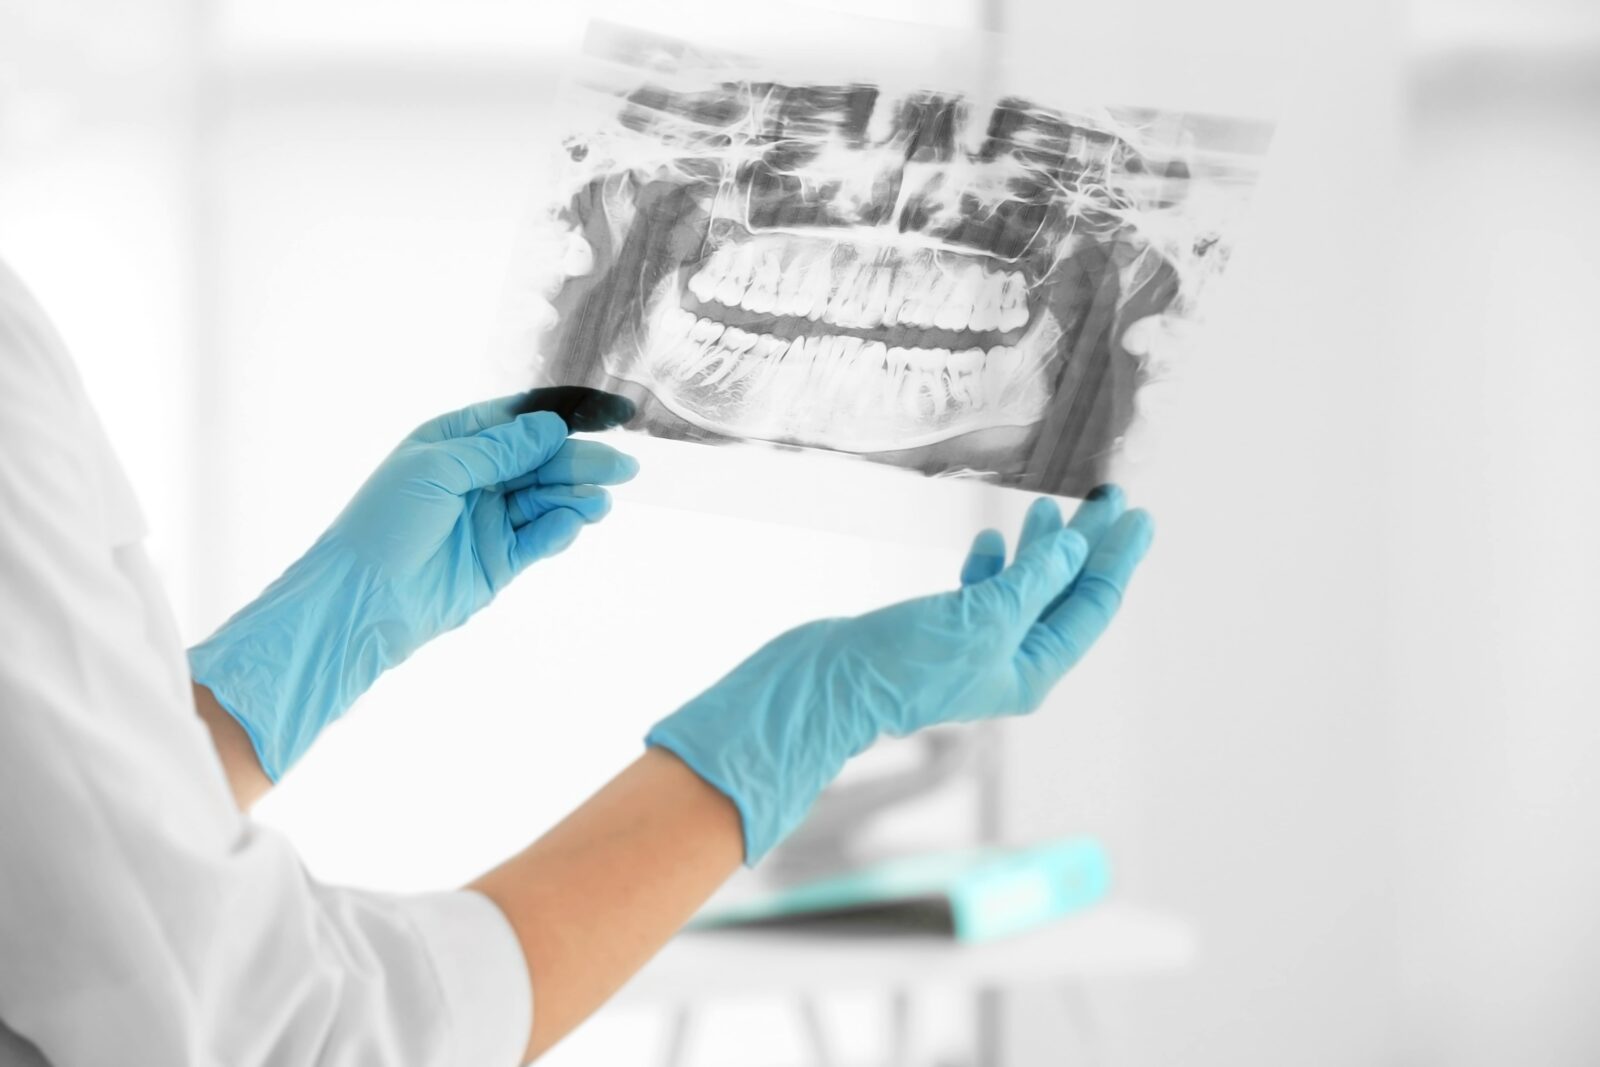 dentist examining a dental x-ray